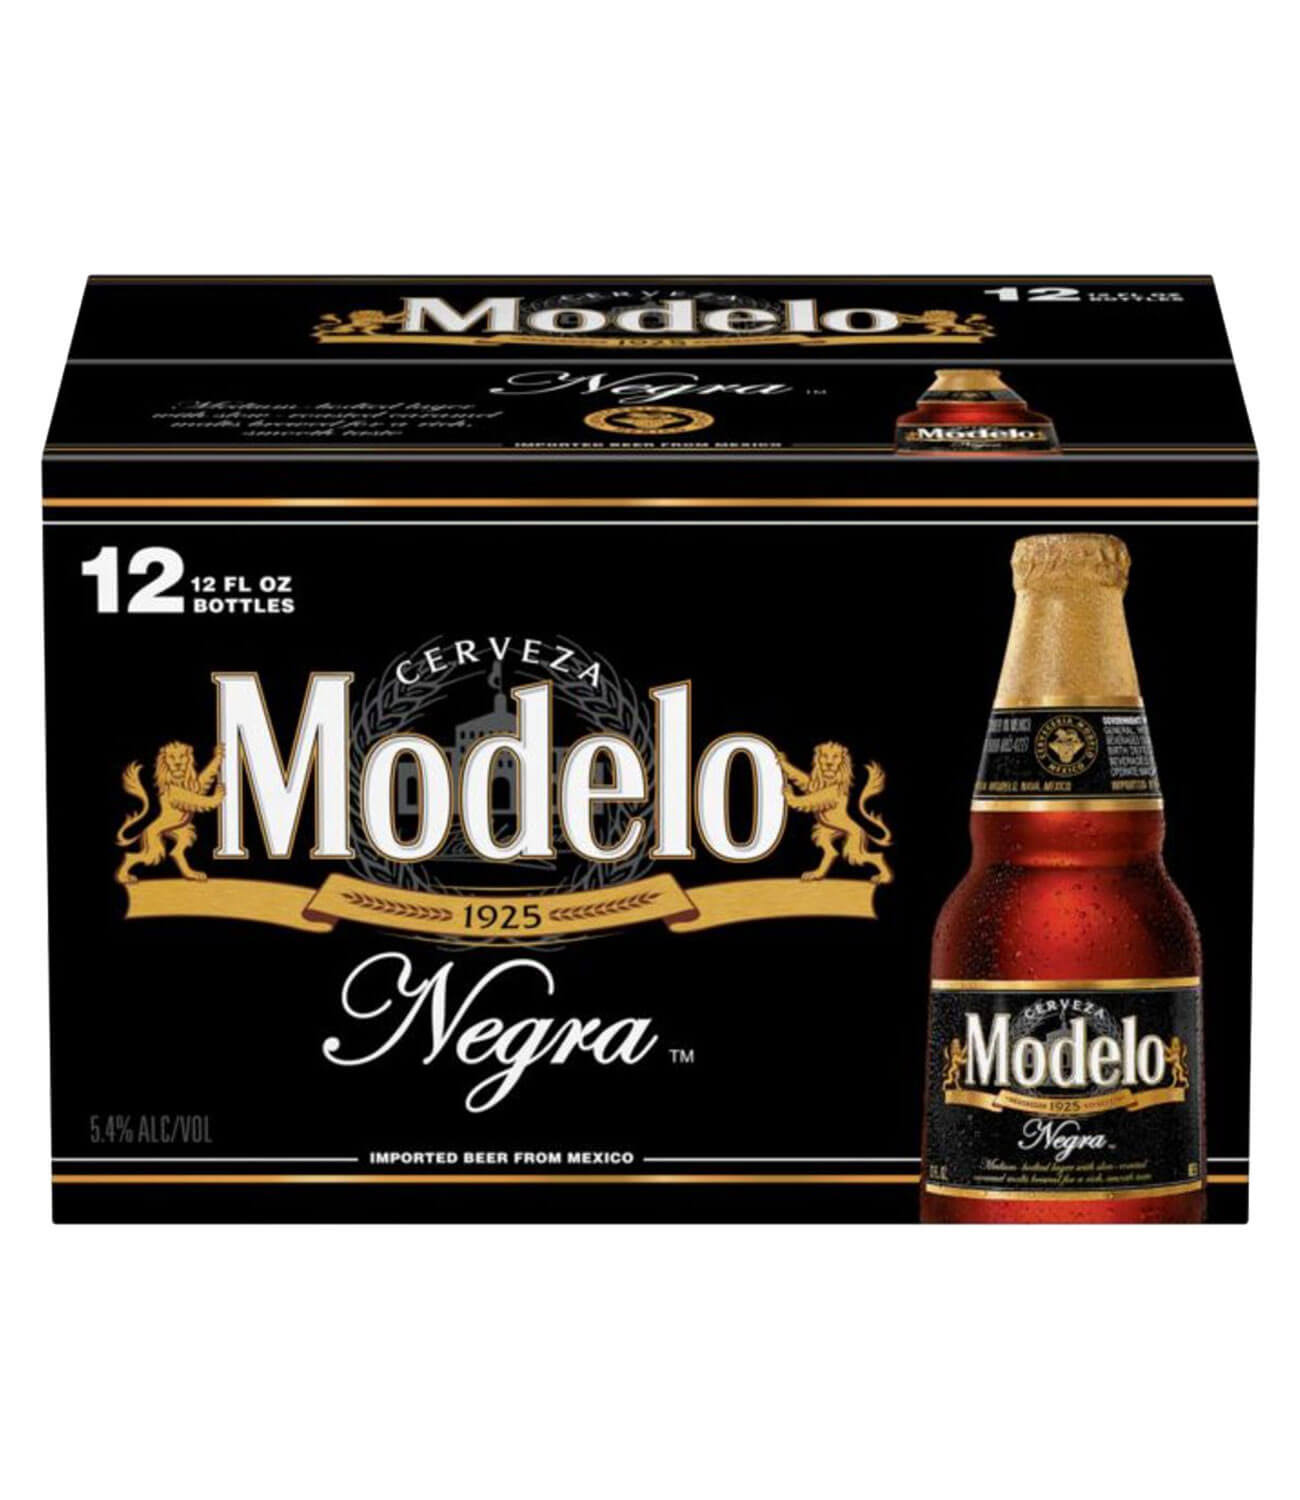 Modelo Beer, Negra - 12 pack, 12 fl oz bottles